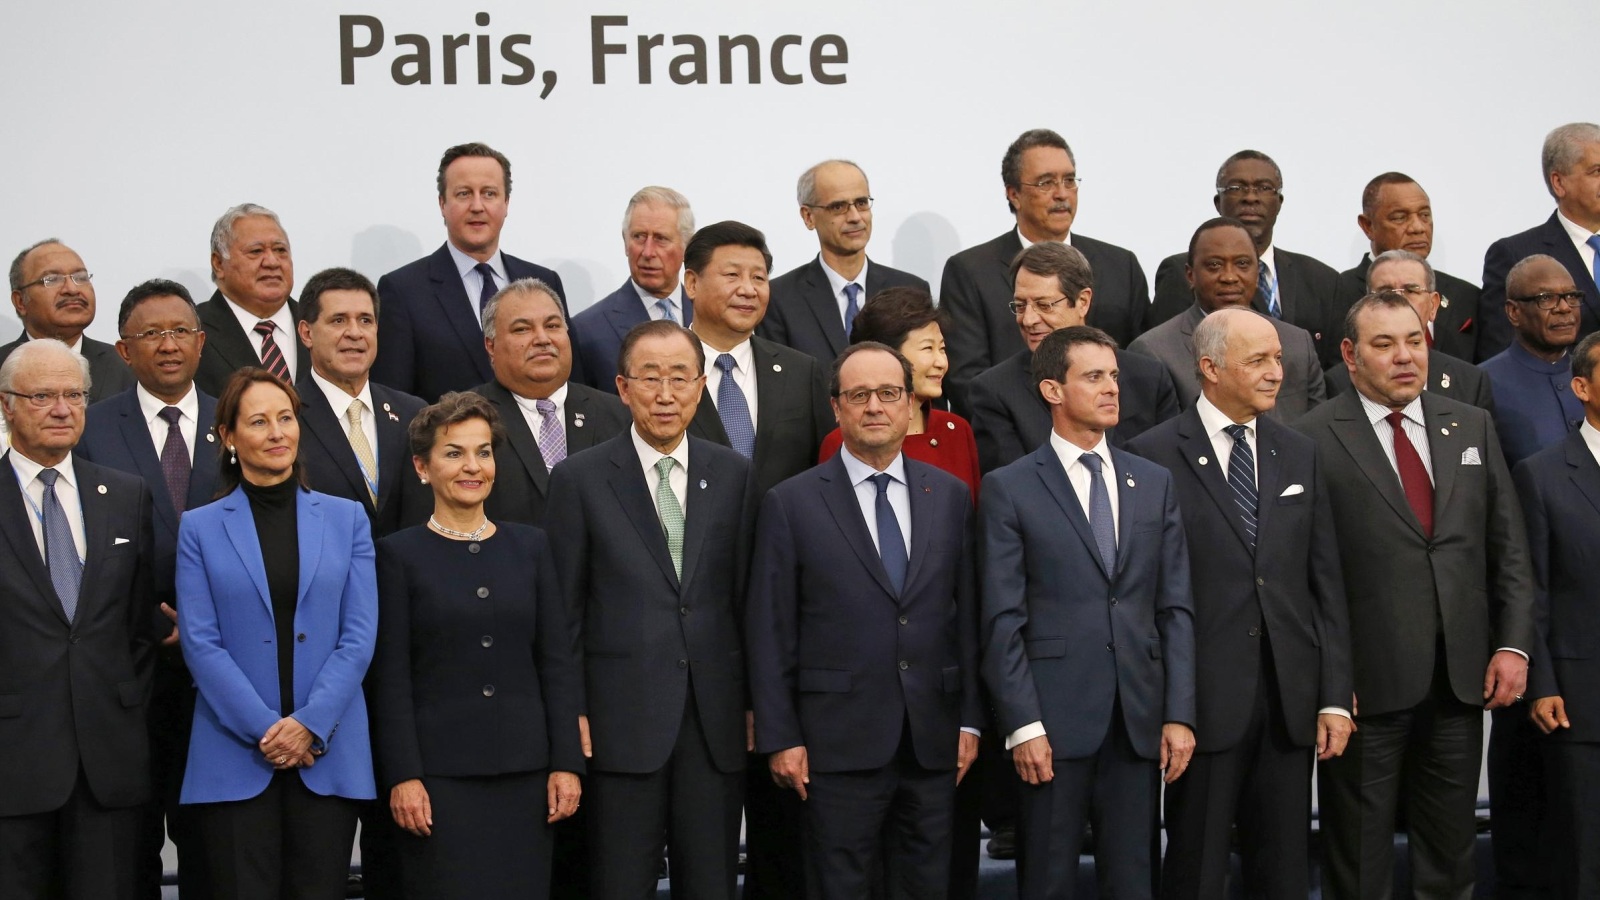 قادة العالم اجتمعوا في باريس لوضع حلول مشتركة لظاهرة تغير المناخ التي تهدد العالم (أسوشيتد برس)